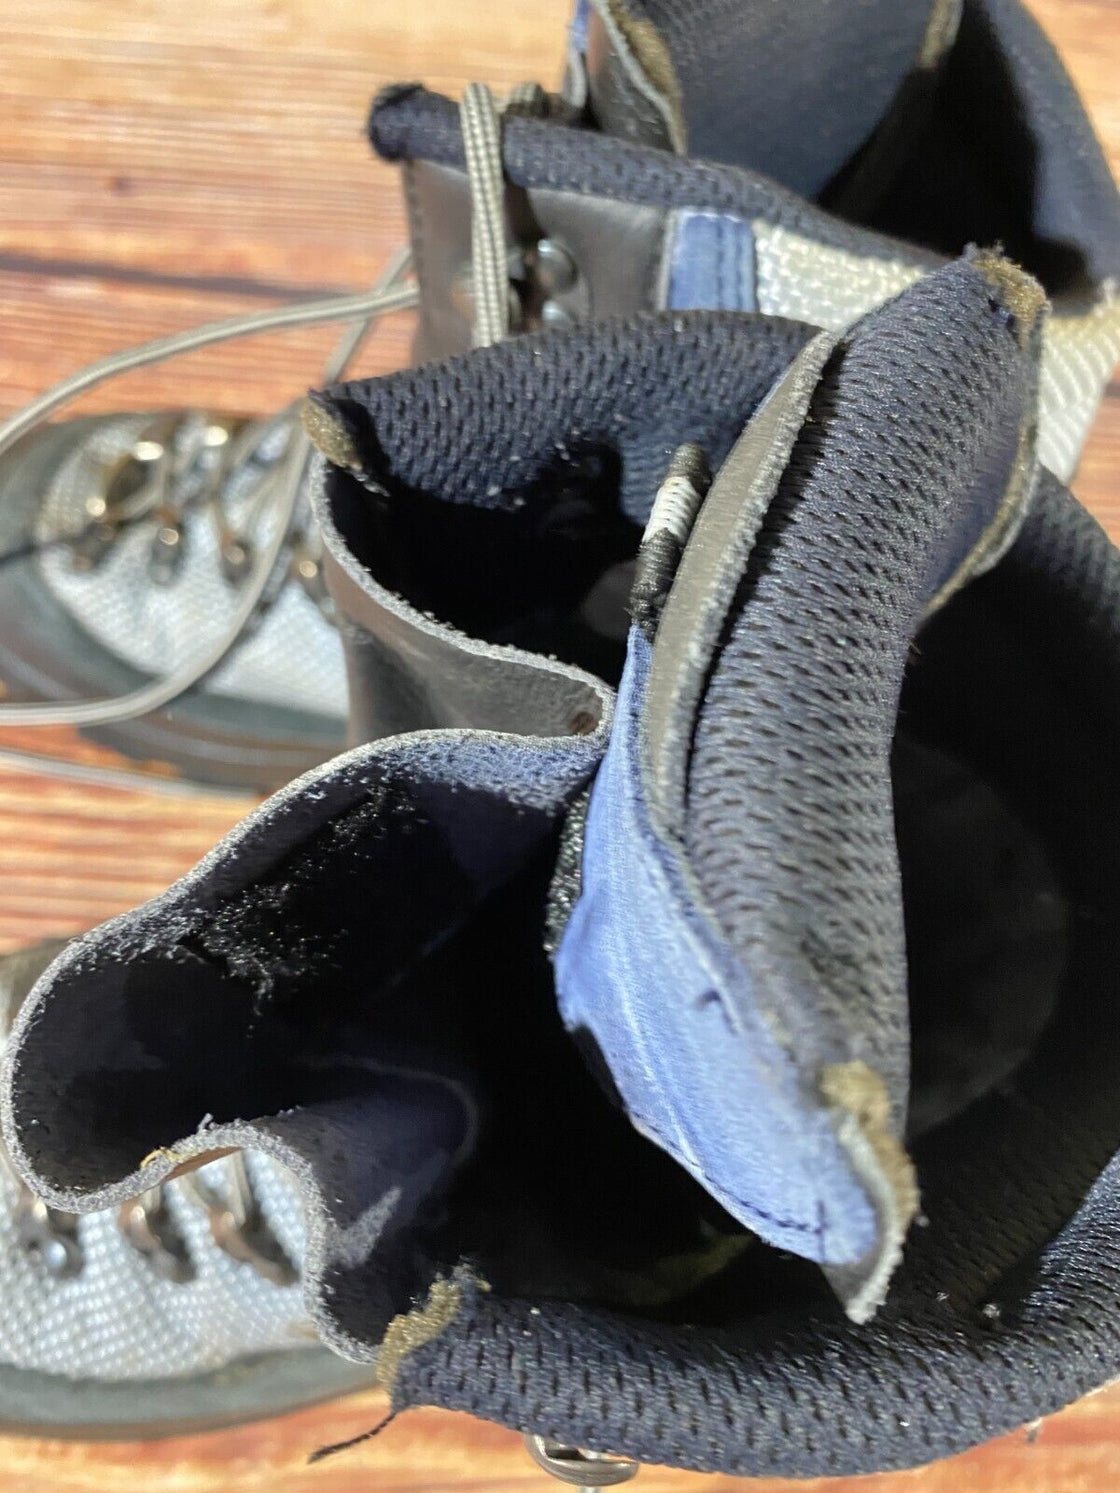 RAICHLE Hiking Boots Trekking Mountaineering Shoes Unisex Size EU42, US8, UK7